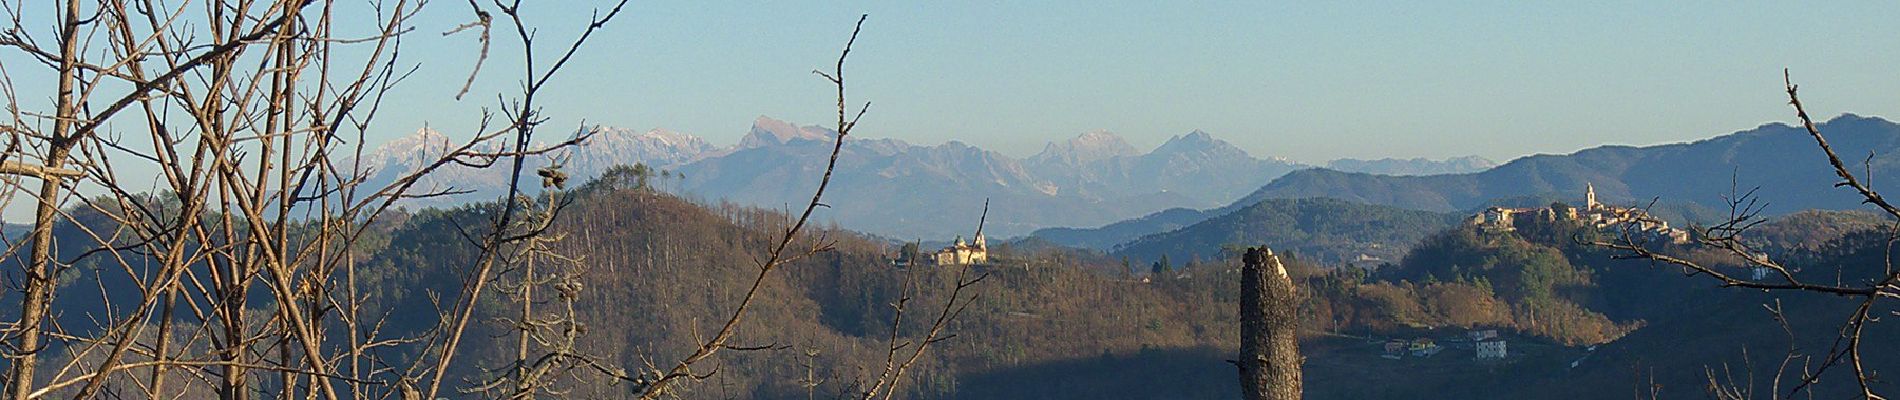 Randonnée A pied Sesta Godano - Arsina - Carrodano Superiore - Mattarana - Colle Gruzze - San Nicolao - Photo